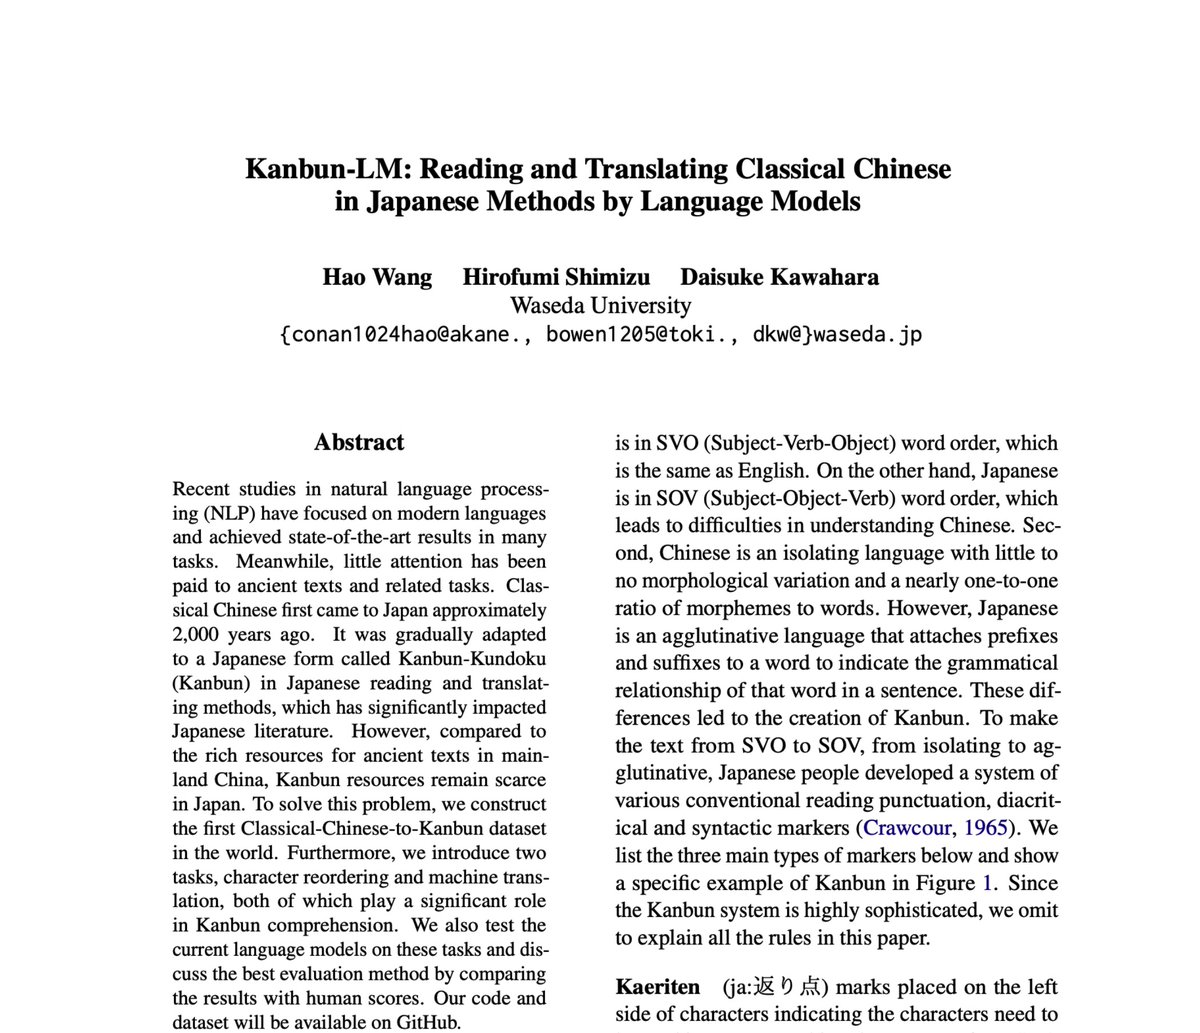 主著論文がFindings of ACL 2023に採択されました！
“Kanbun-LM: Reading and Translating Classical Chinese in Japanese Methods by Language Models”
漢文の自動返り点付与と書き下し文生成に関する研究です。マイナーな分野ですが、漢文教育の発展に繋げられると期待しています！

#ACL2023NLP